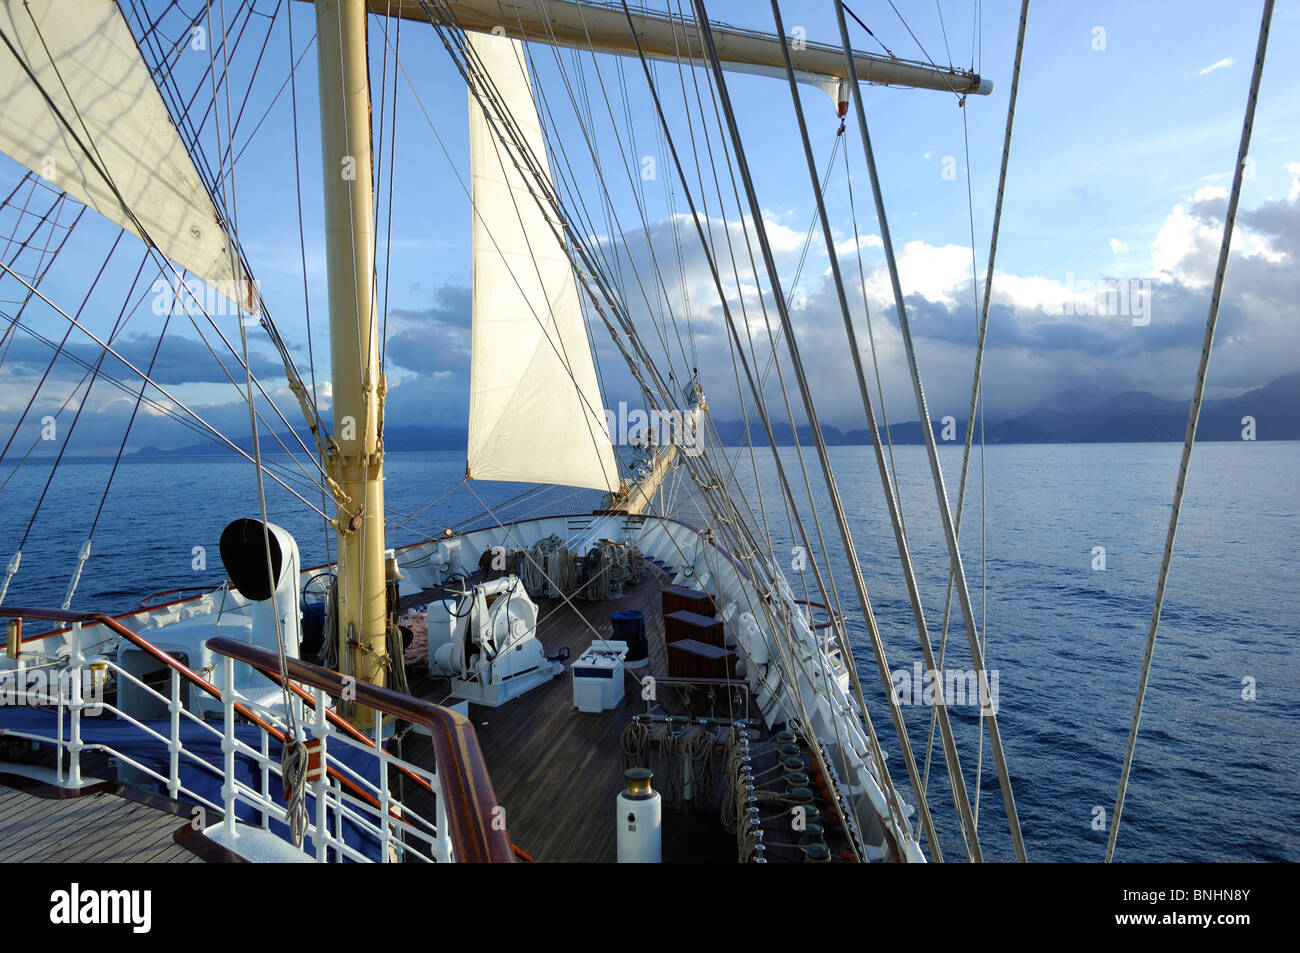 Royal Clipper Star Clippers Sailing vessel sailship sailing holiday vacation cruise ship Caribbean Stock Photo